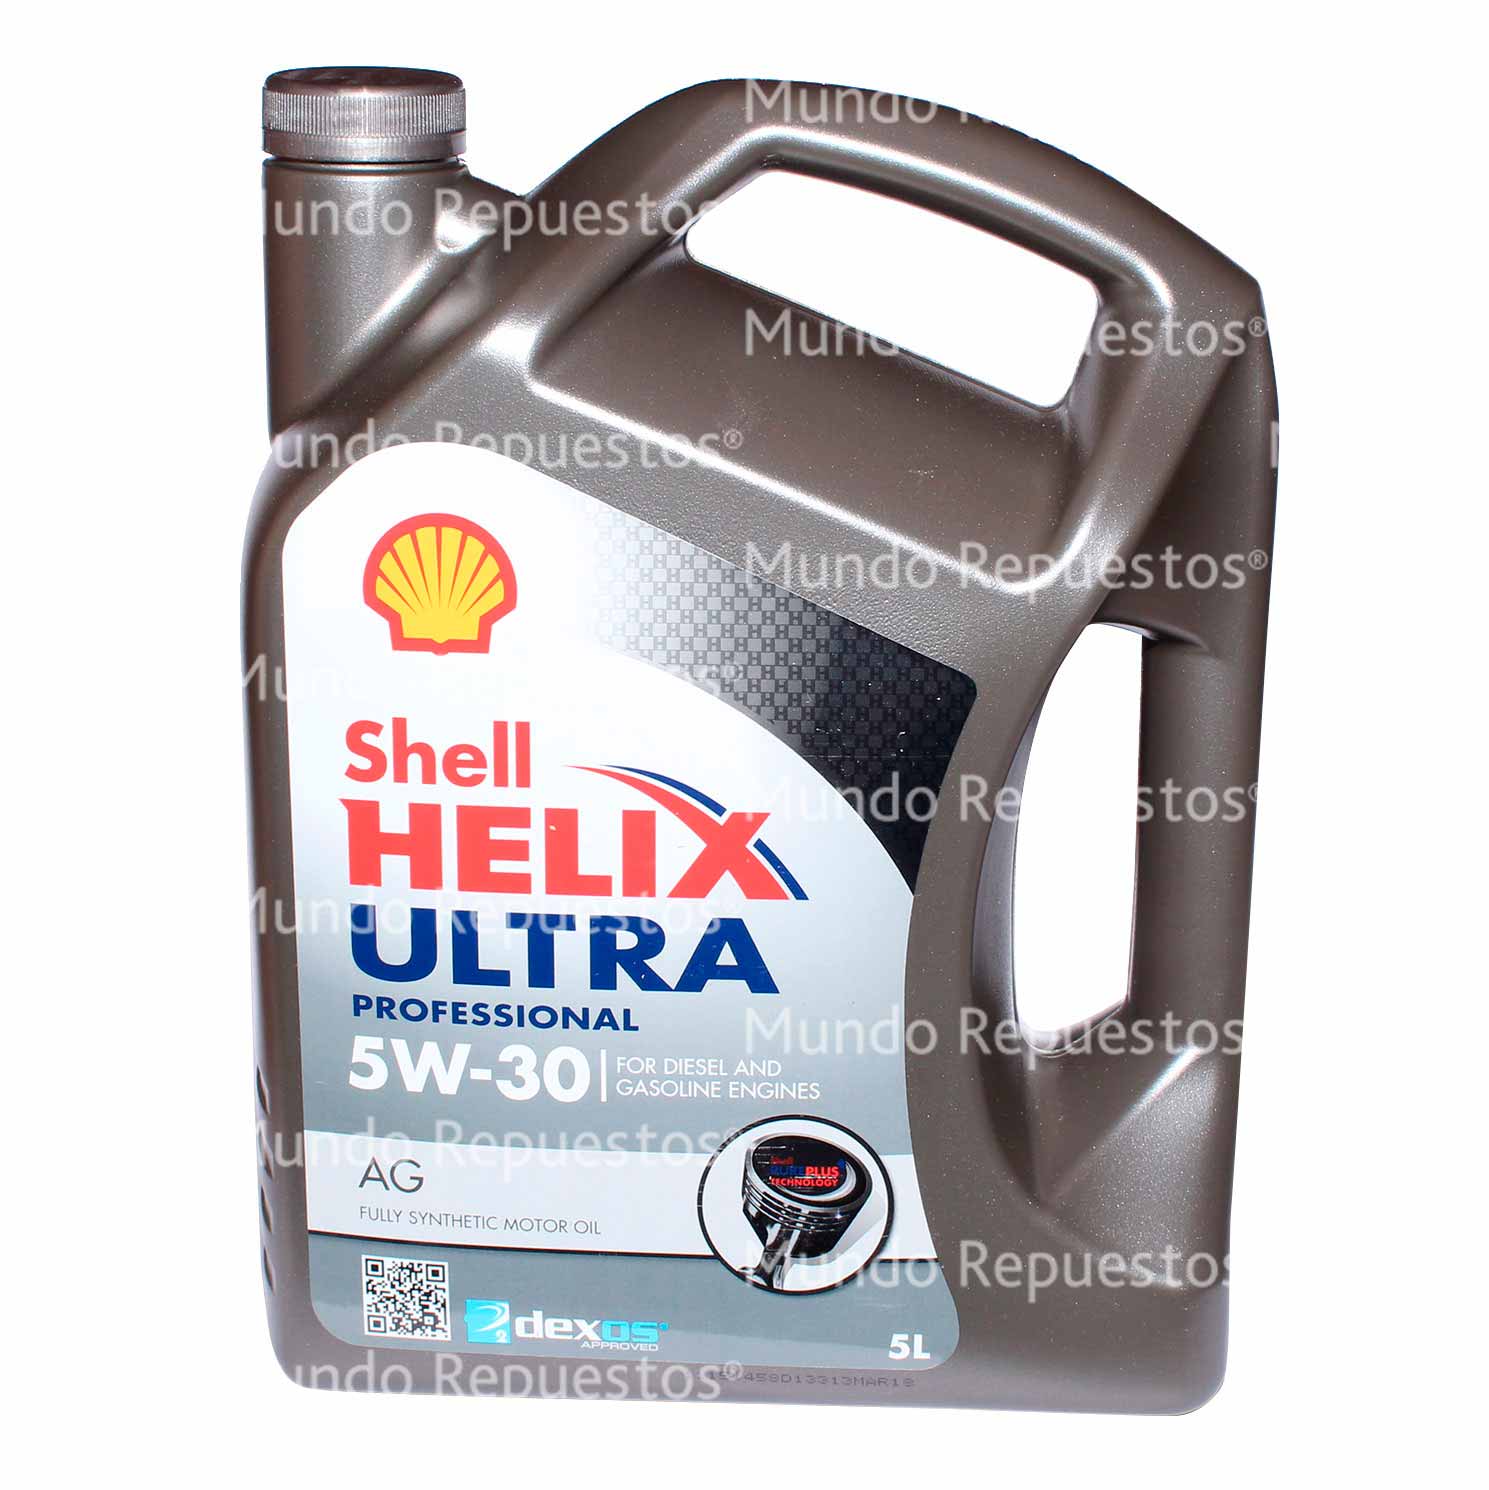 Aceite marca Shell disponible en Mundo Repuestos